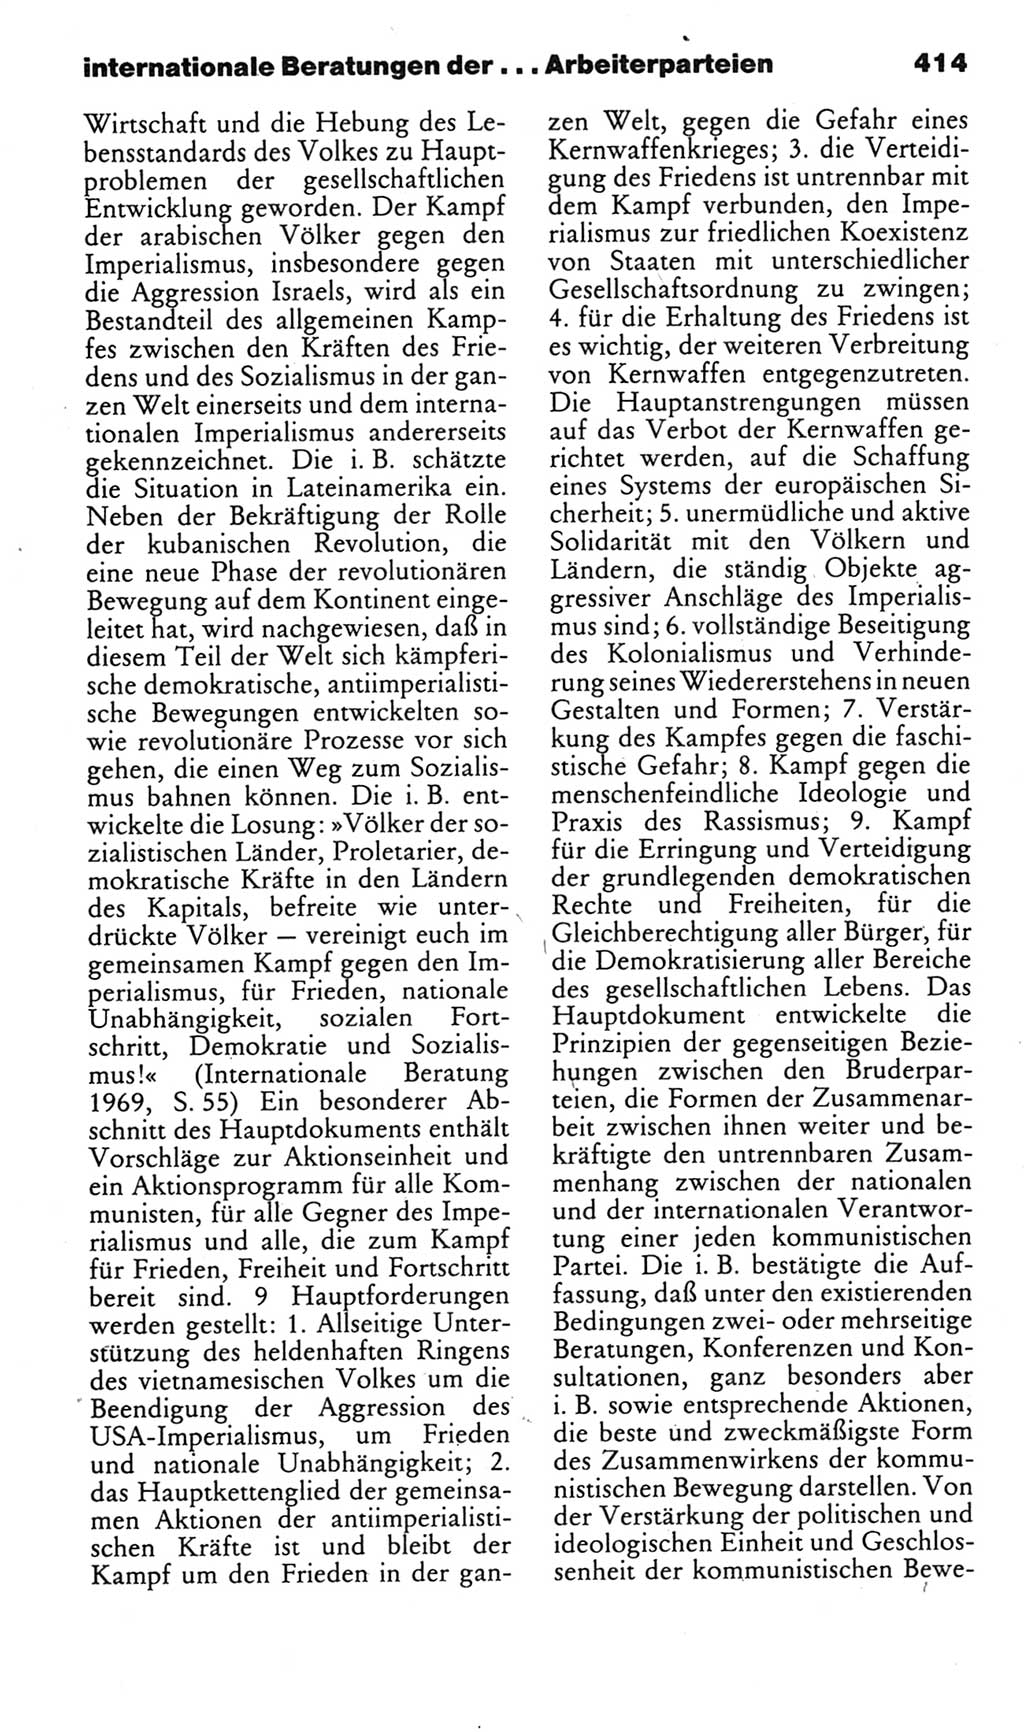 Kleines politisches Wörterbuch [Deutsche Demokratische Republik (DDR)] 1985, Seite 414 (Kl. pol. Wb. DDR 1985, S. 414)